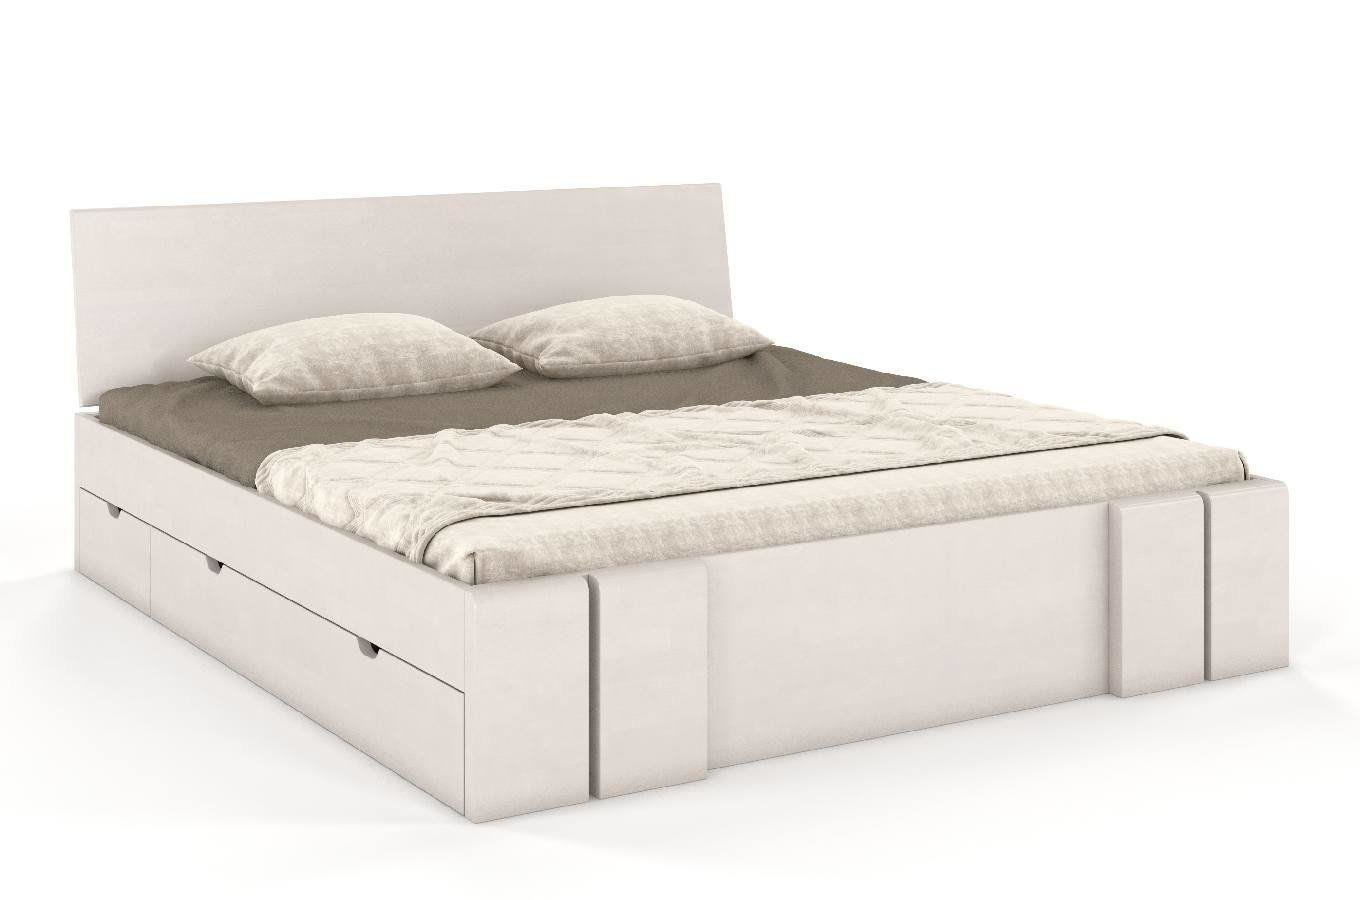 Łóżko drewniane bukowe z szufladami Skandica VESTRE Maxi & DR / 200x200 cm, kolor biały